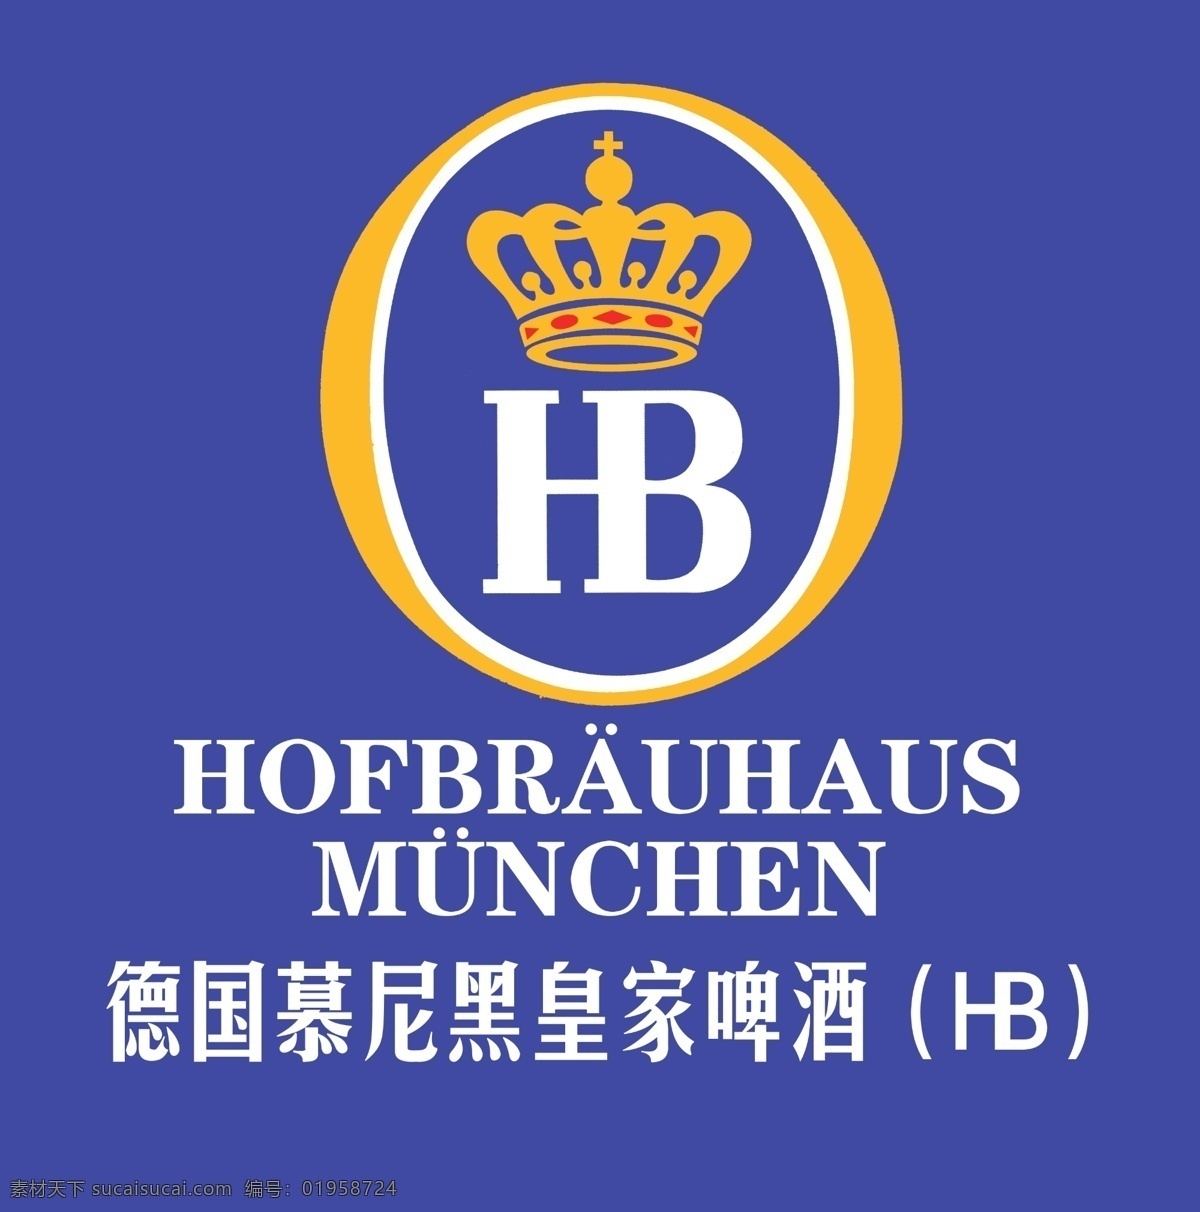 慕尼黑 皇家 啤酒 hb 扎啤 标志设计 广告设计模板 源文件